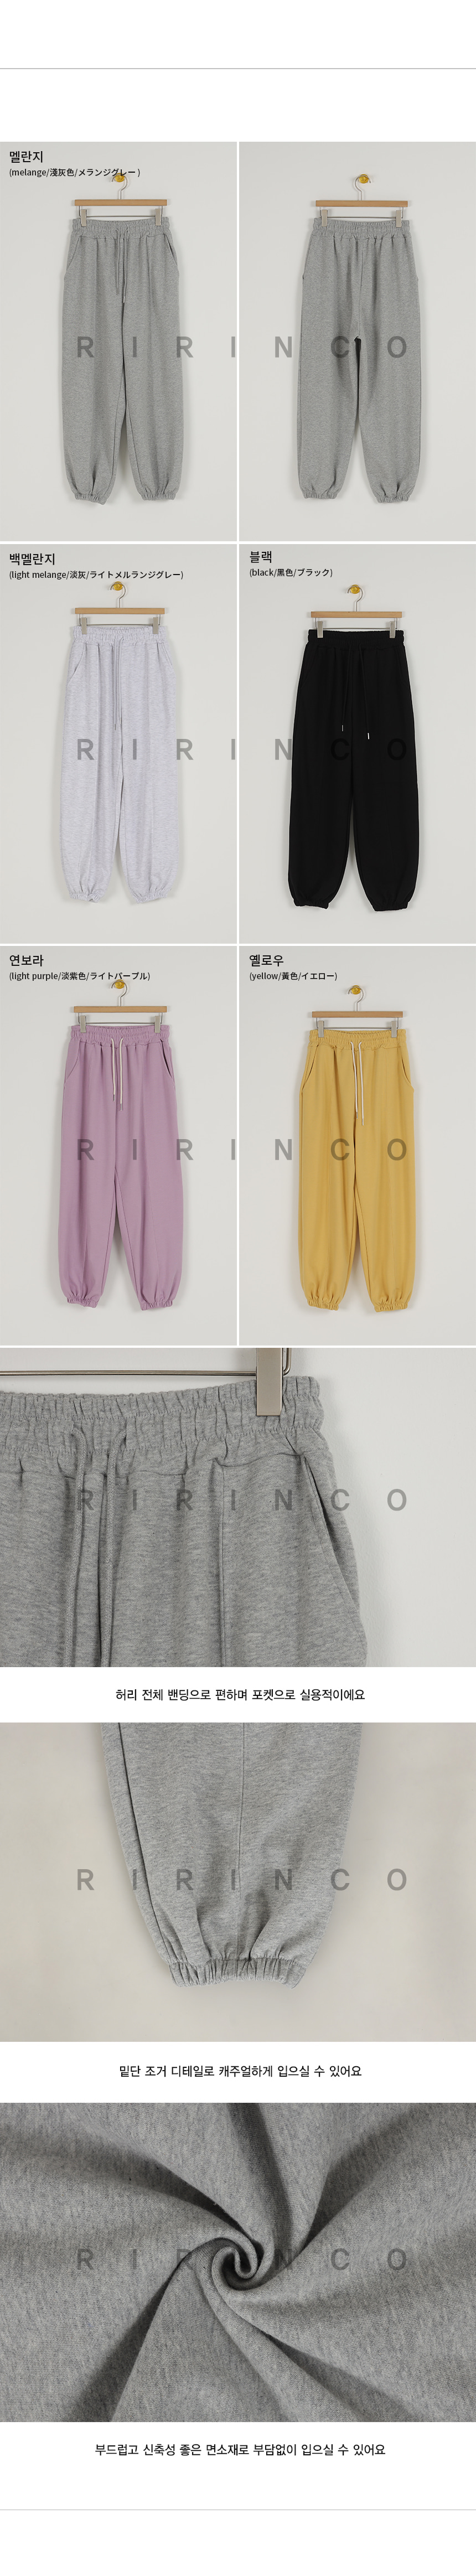 RIRINCO ストリング付きジョガーパンツ